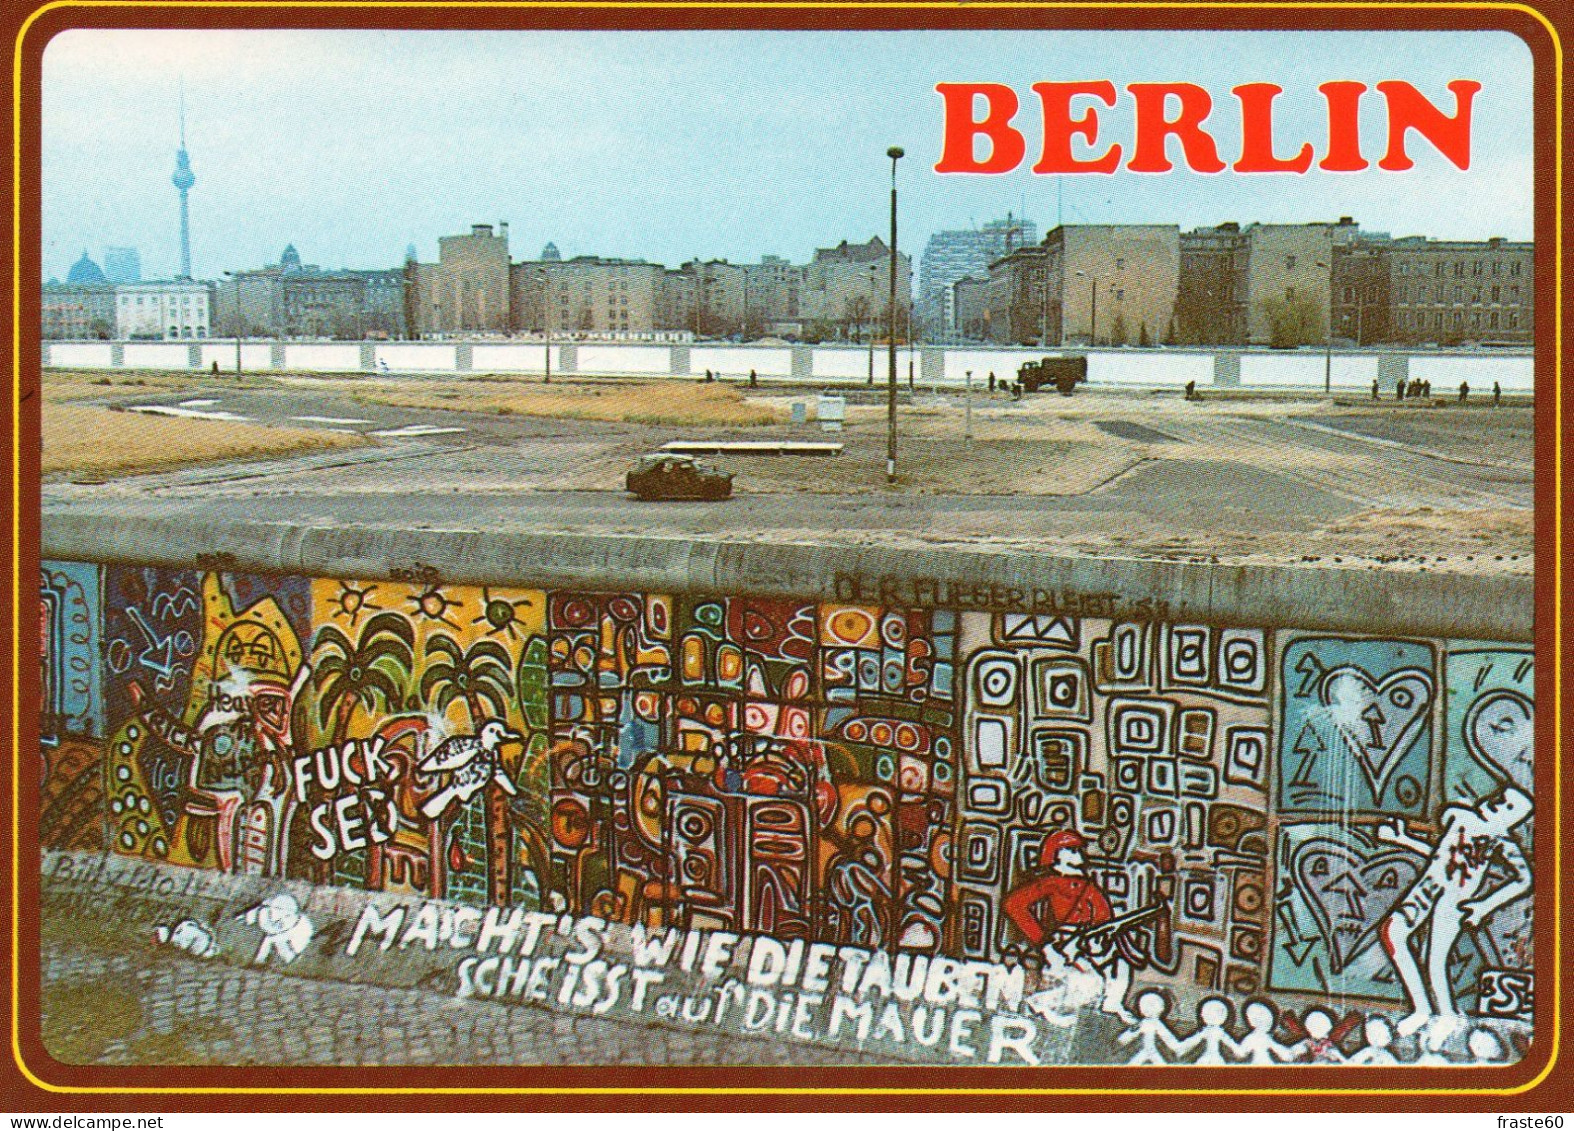 Berlin - Postdamer Platz - Berliner Mauer